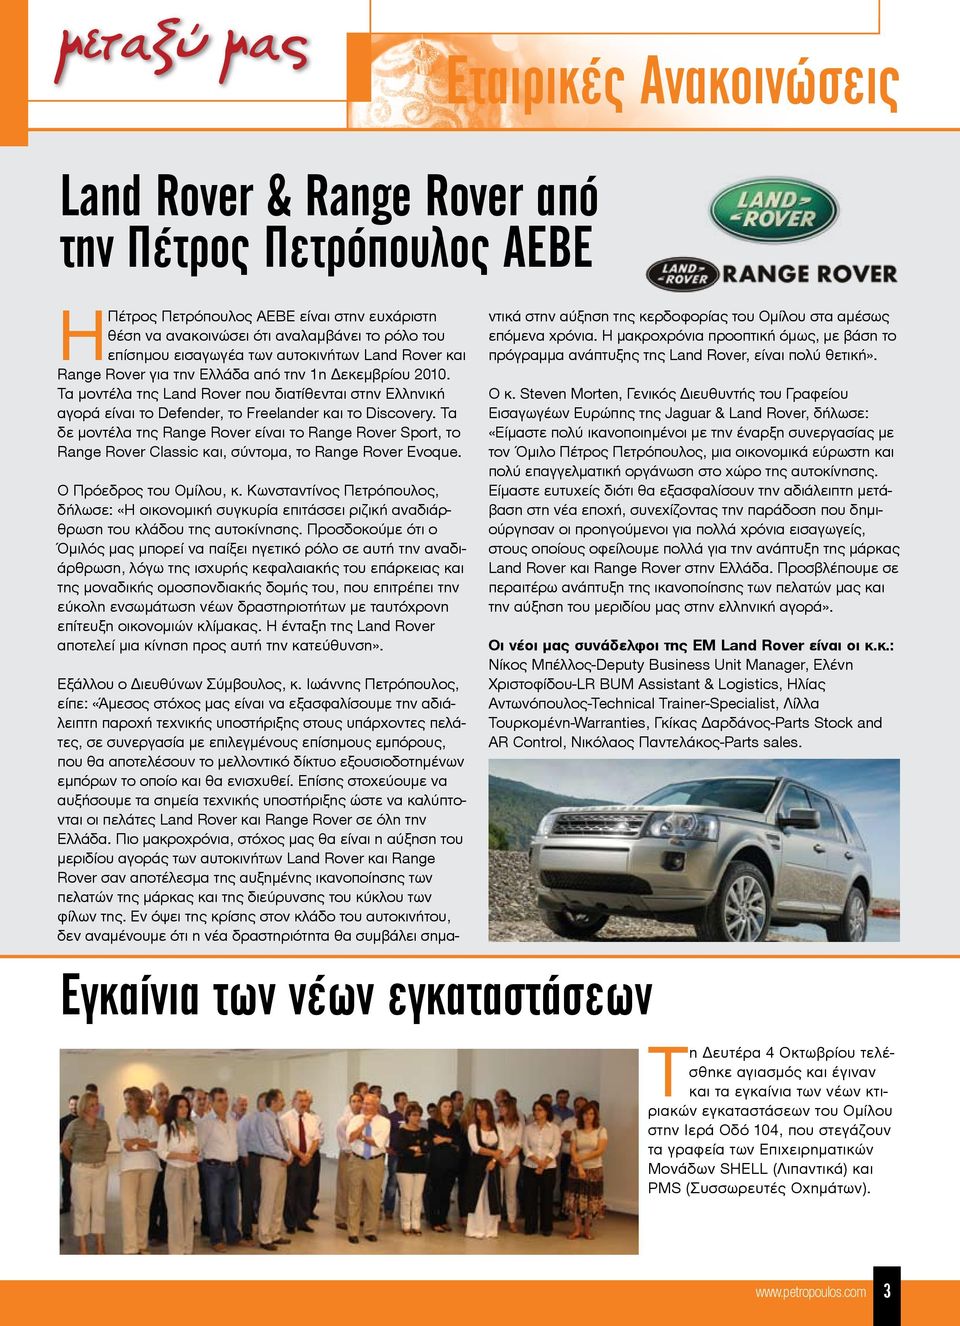 Τα μοντέλα της Land Rover που διατίθενται στην Ελληνική αγορά είναι το Defender, το Freelander και το Discovery.